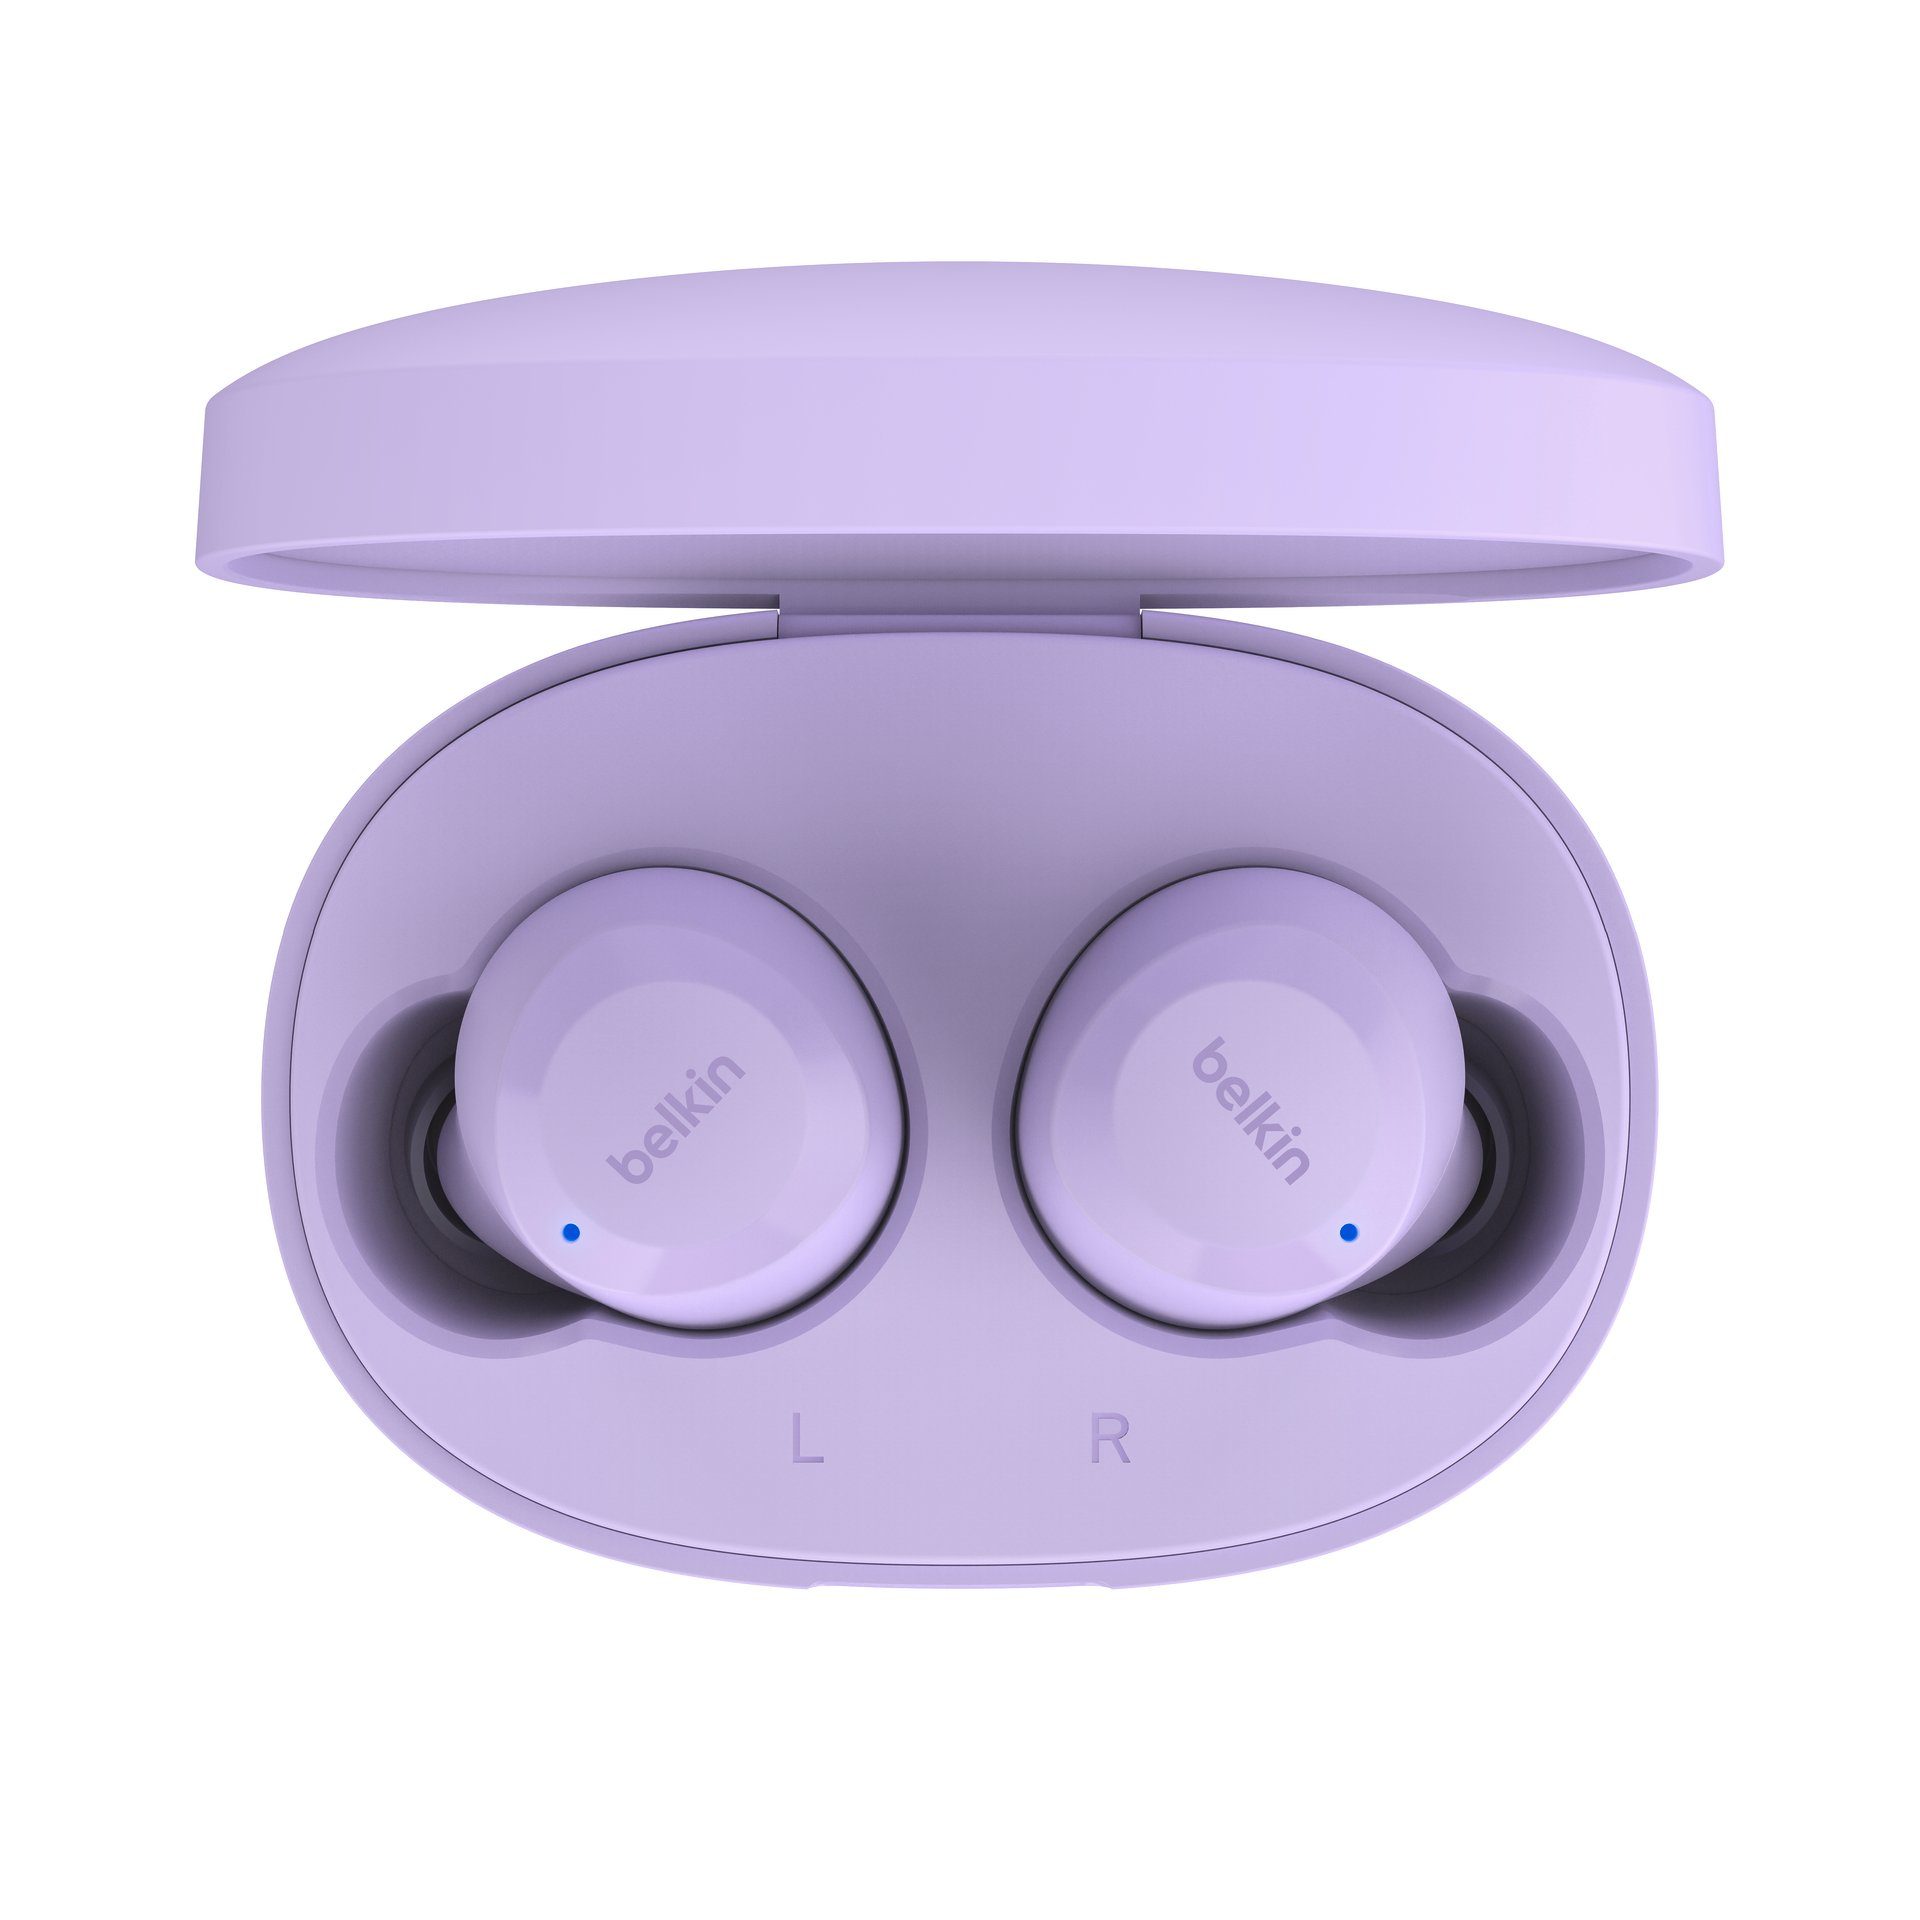 SoundForm In-Ear-Kopfhörer Bolt Belkin Lavendel wireless